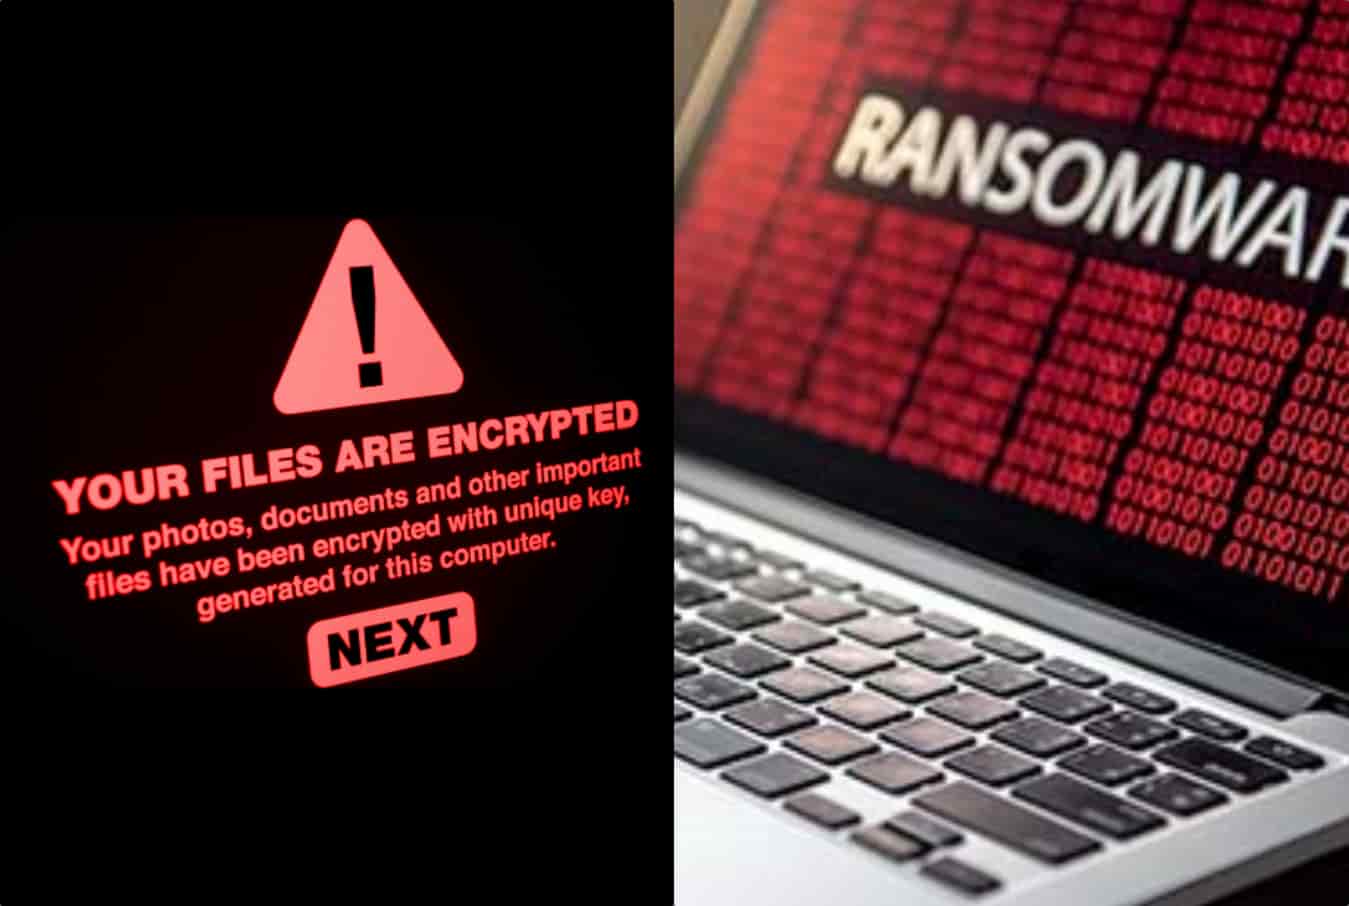 2 new ransomware gangs Haron, BlackMatter appear after REvil, DarkSide